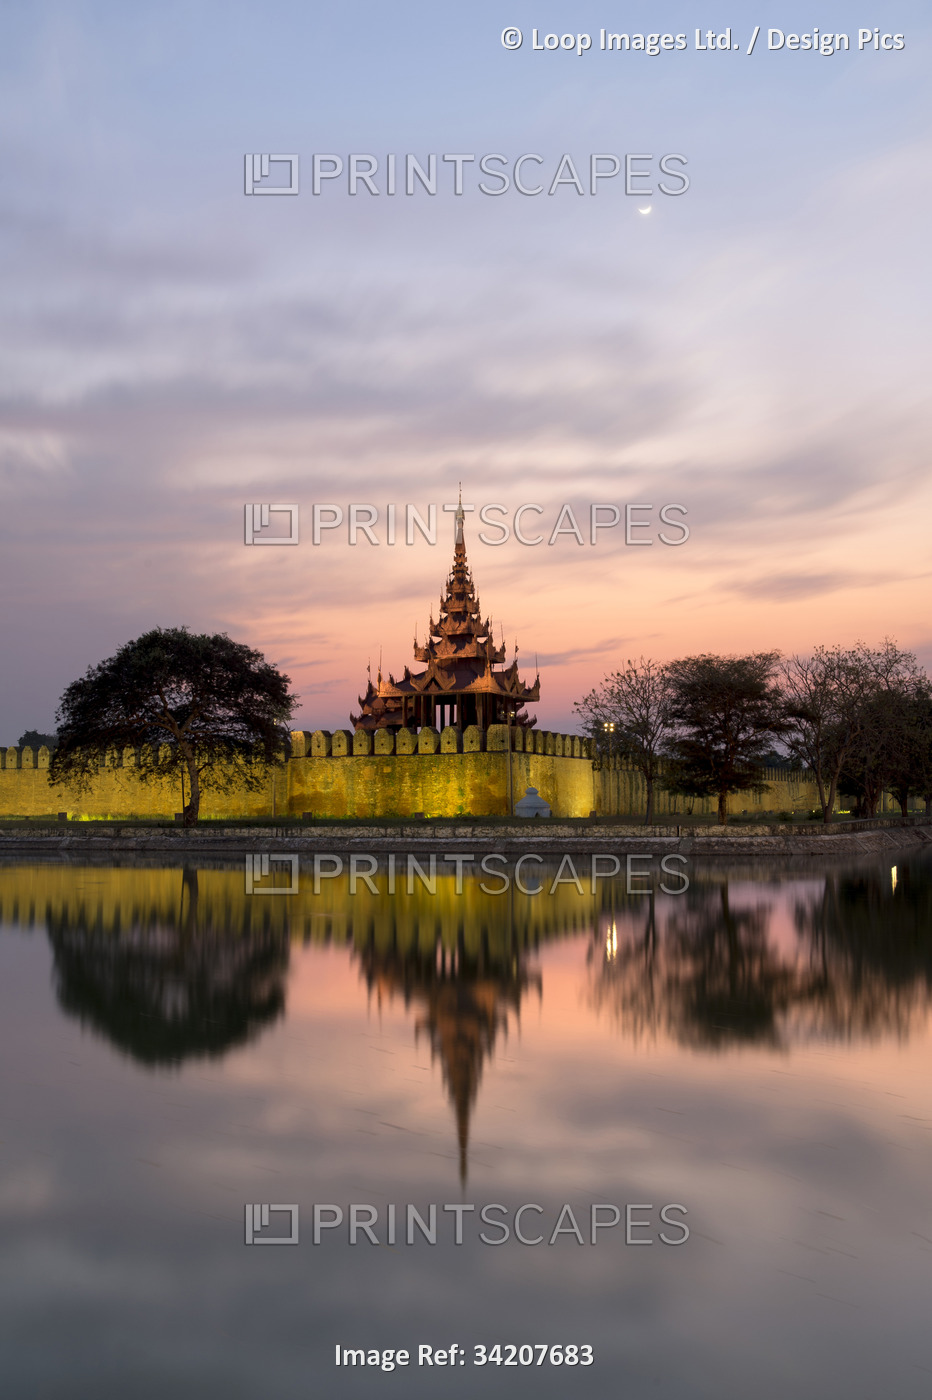 The Royal Palace reflected at dusk in Mandalay.